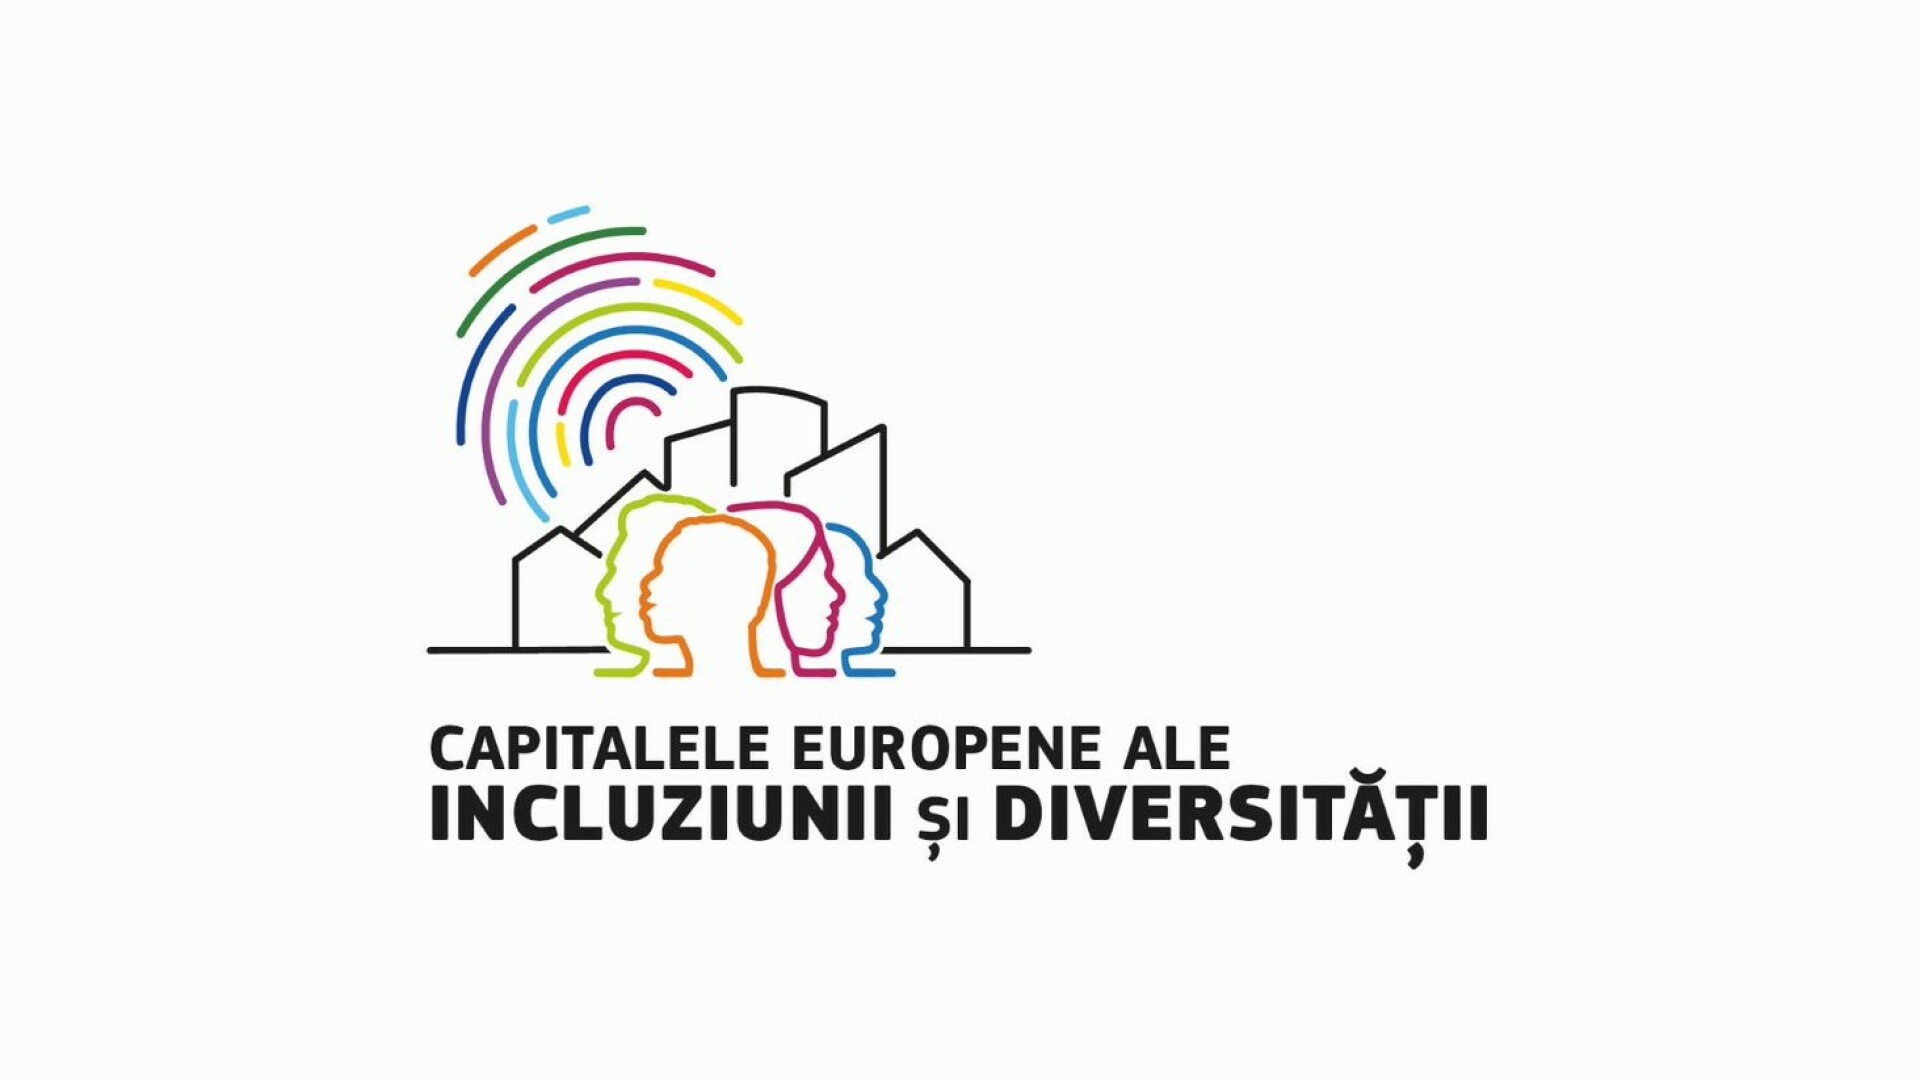 29 de finaliști la “Capitalele Europene ale Incluziunii și Diversității”, care premiază orașele ce sărbătoresc diversitatea